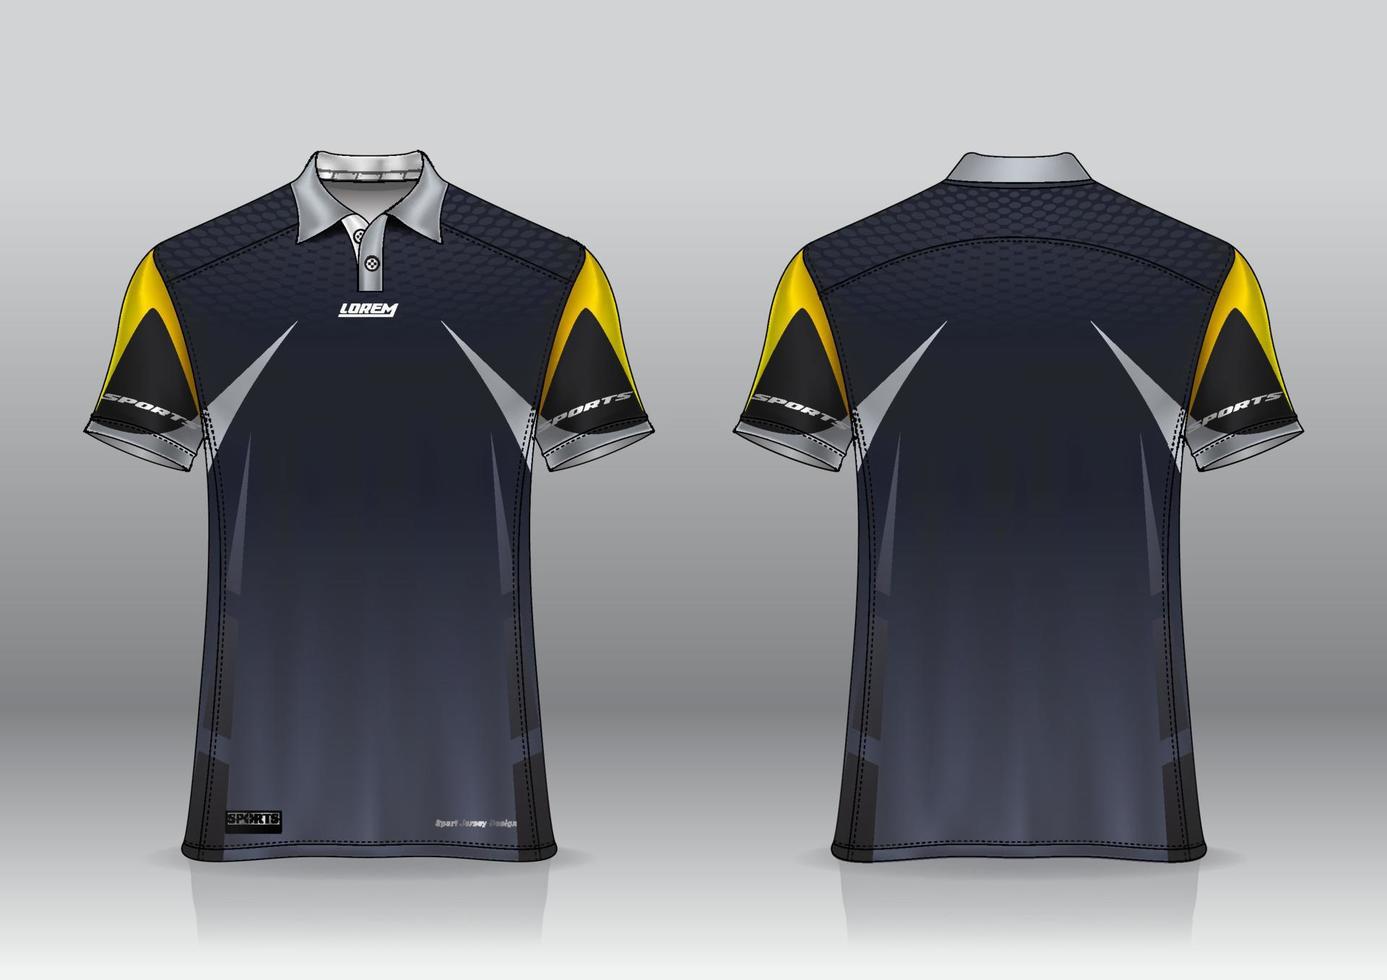 polo shirt uniform design for outdoor sports 8028474 Vector Art at Vecteezy